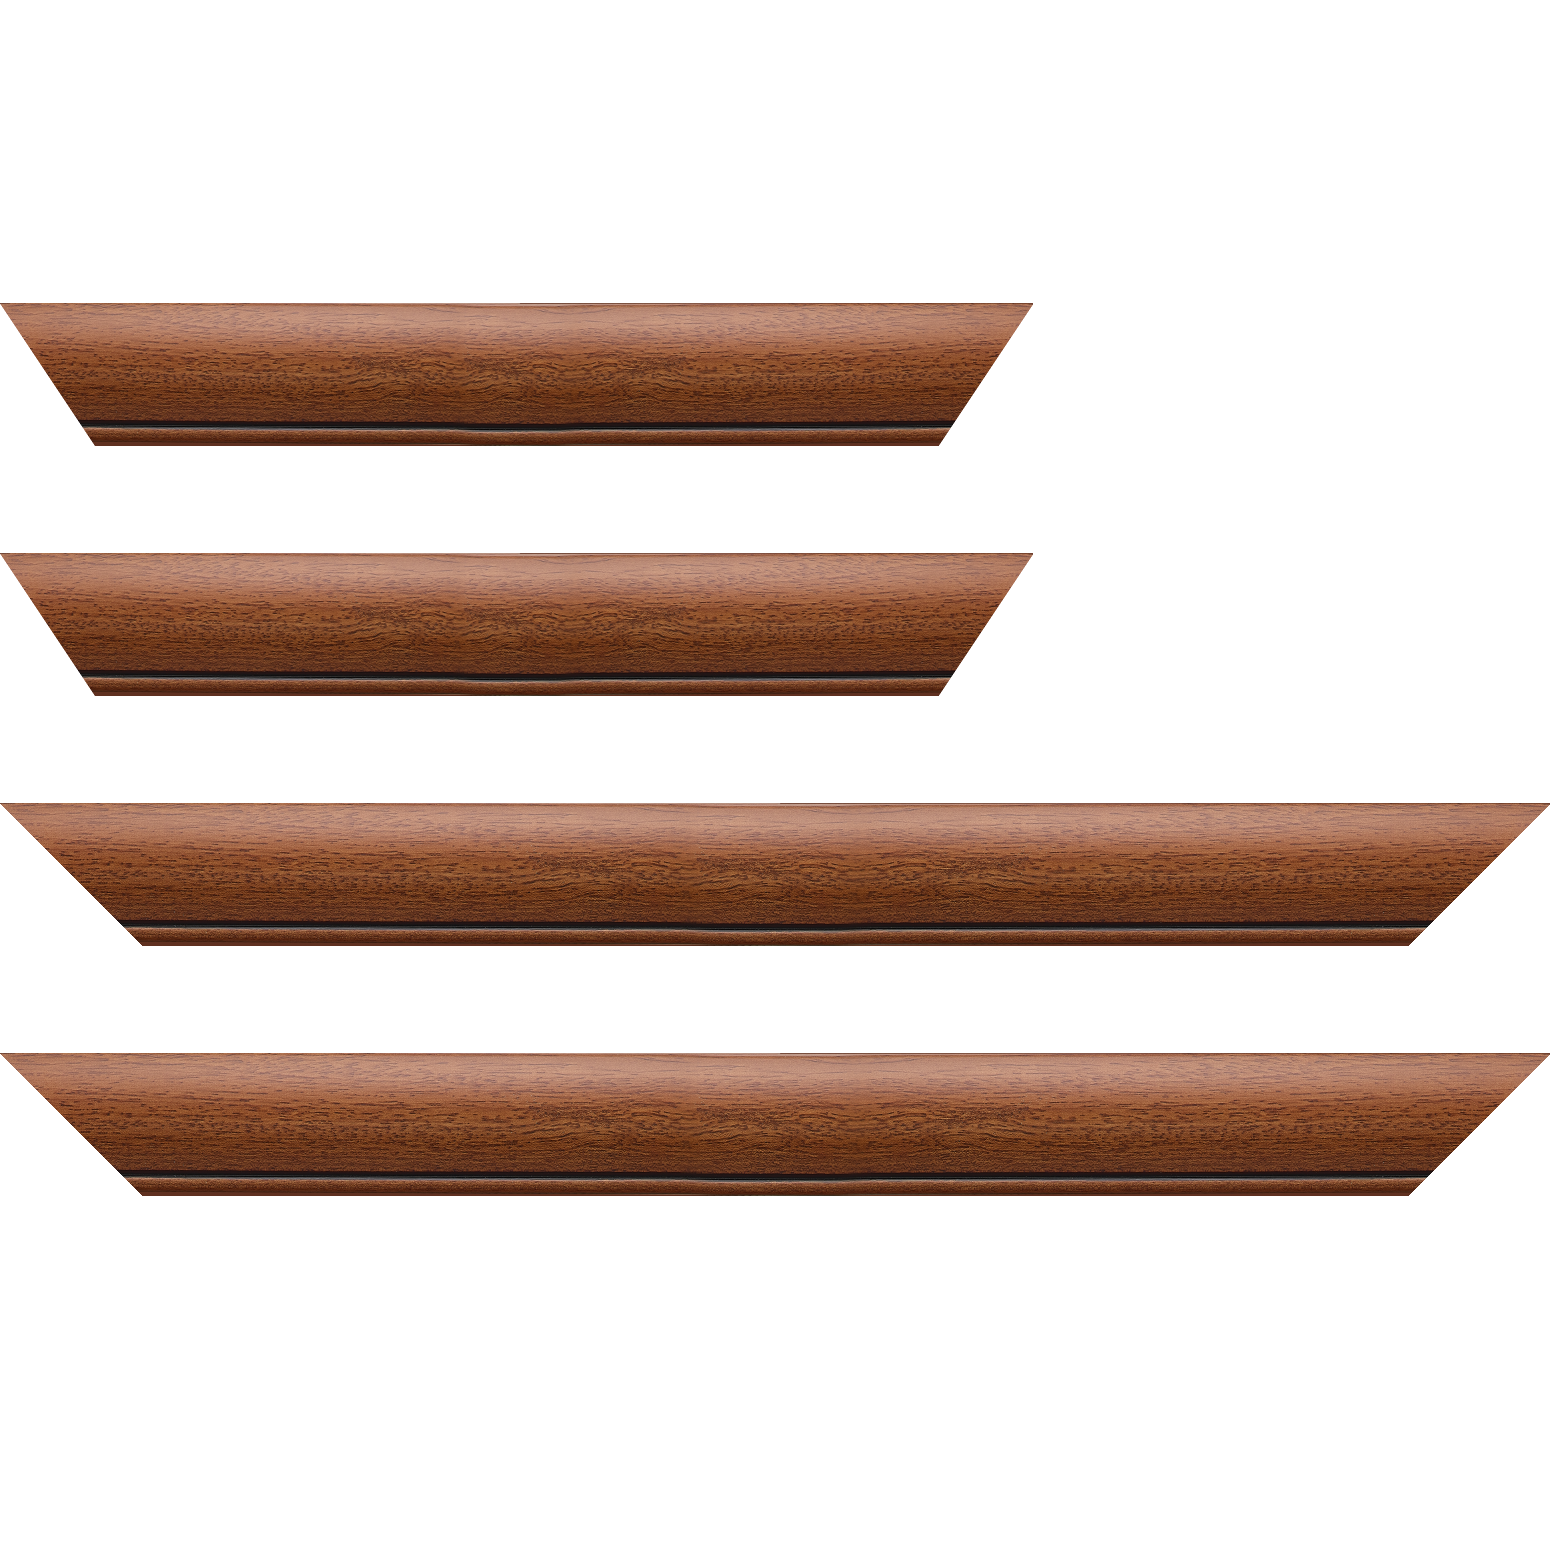 Baguette bois profil arrondi largeur 4.7cm couleur marron ton bois satiné rehaussé d'un filet noir - 24x30